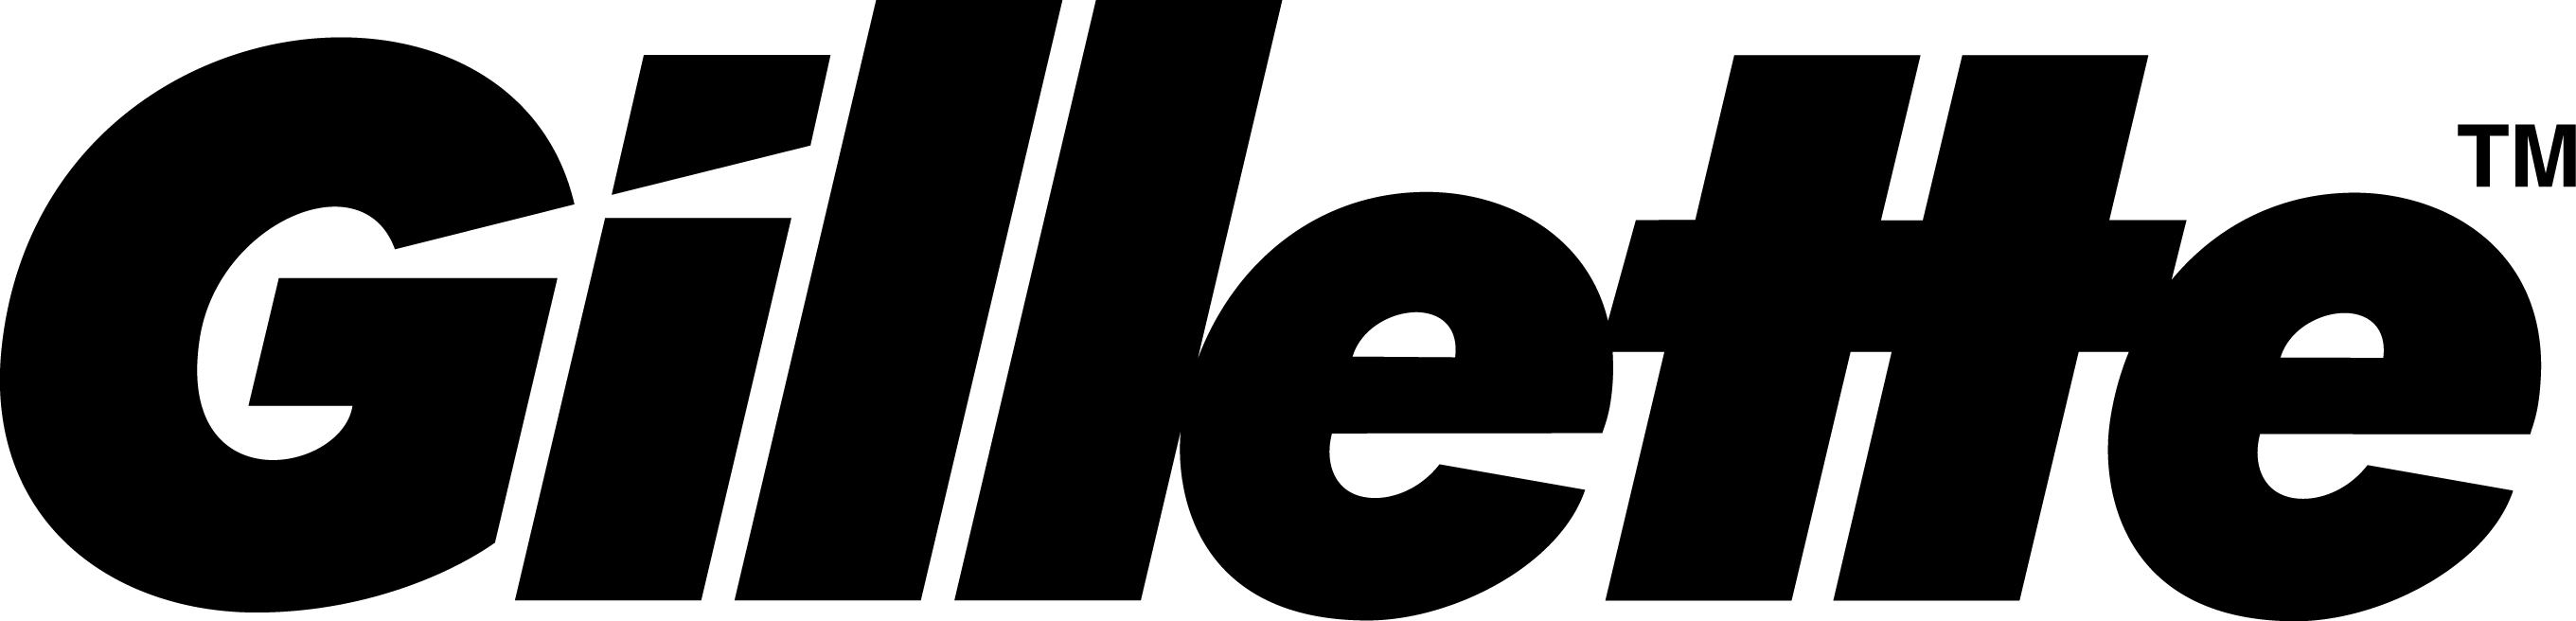 Gillette Logo PNG - 176231